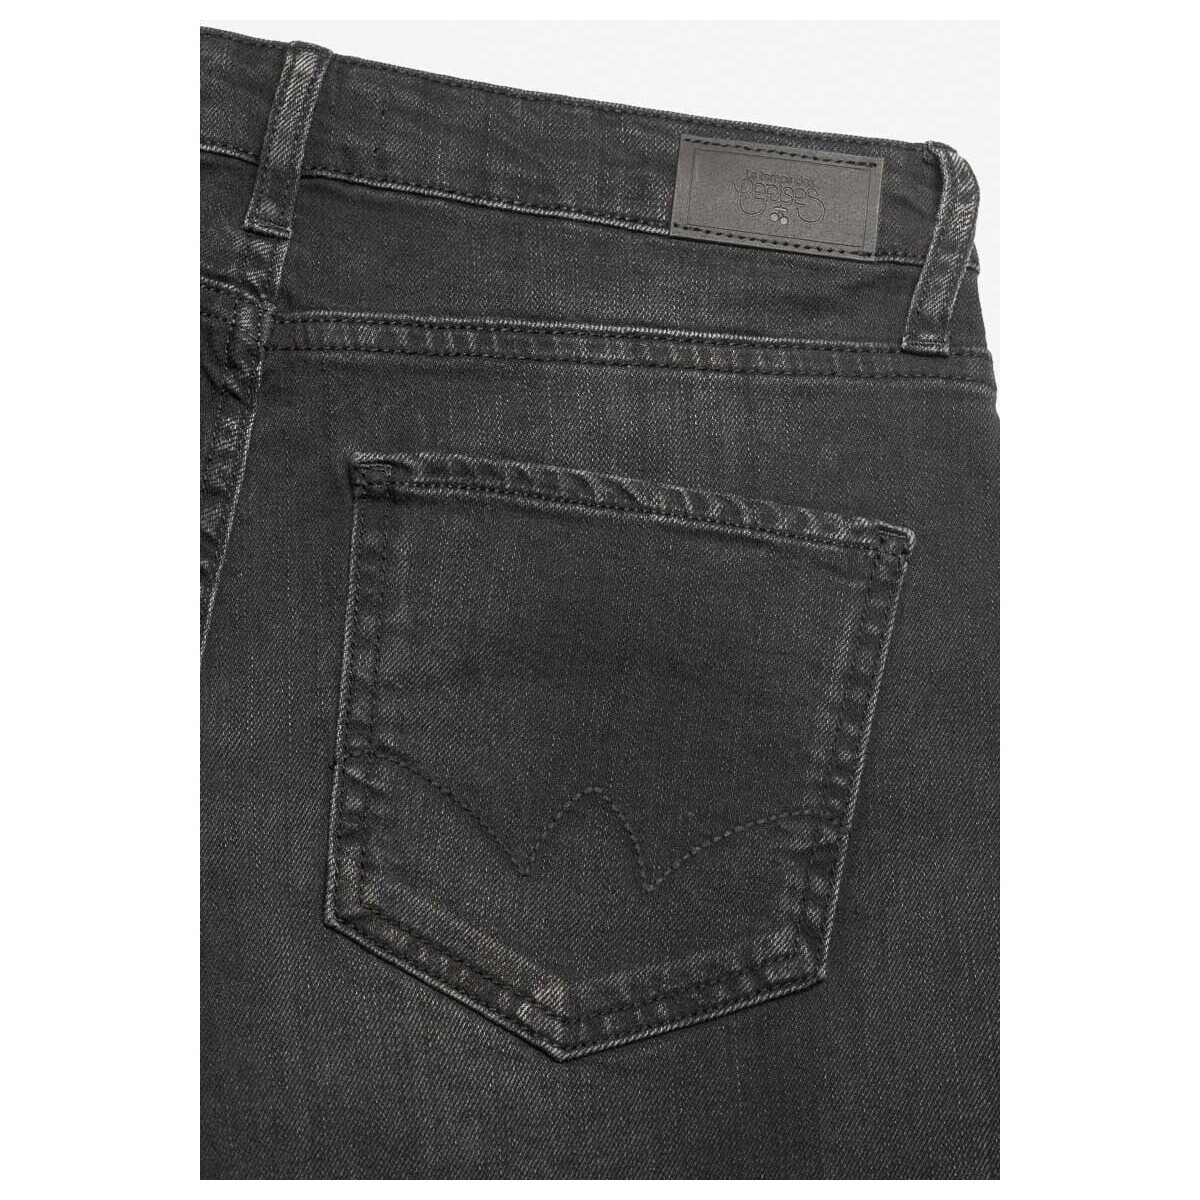 Le Temps des Cerises Noir Cosa boyfit 7/8ème jeans noir RiHTHSLx